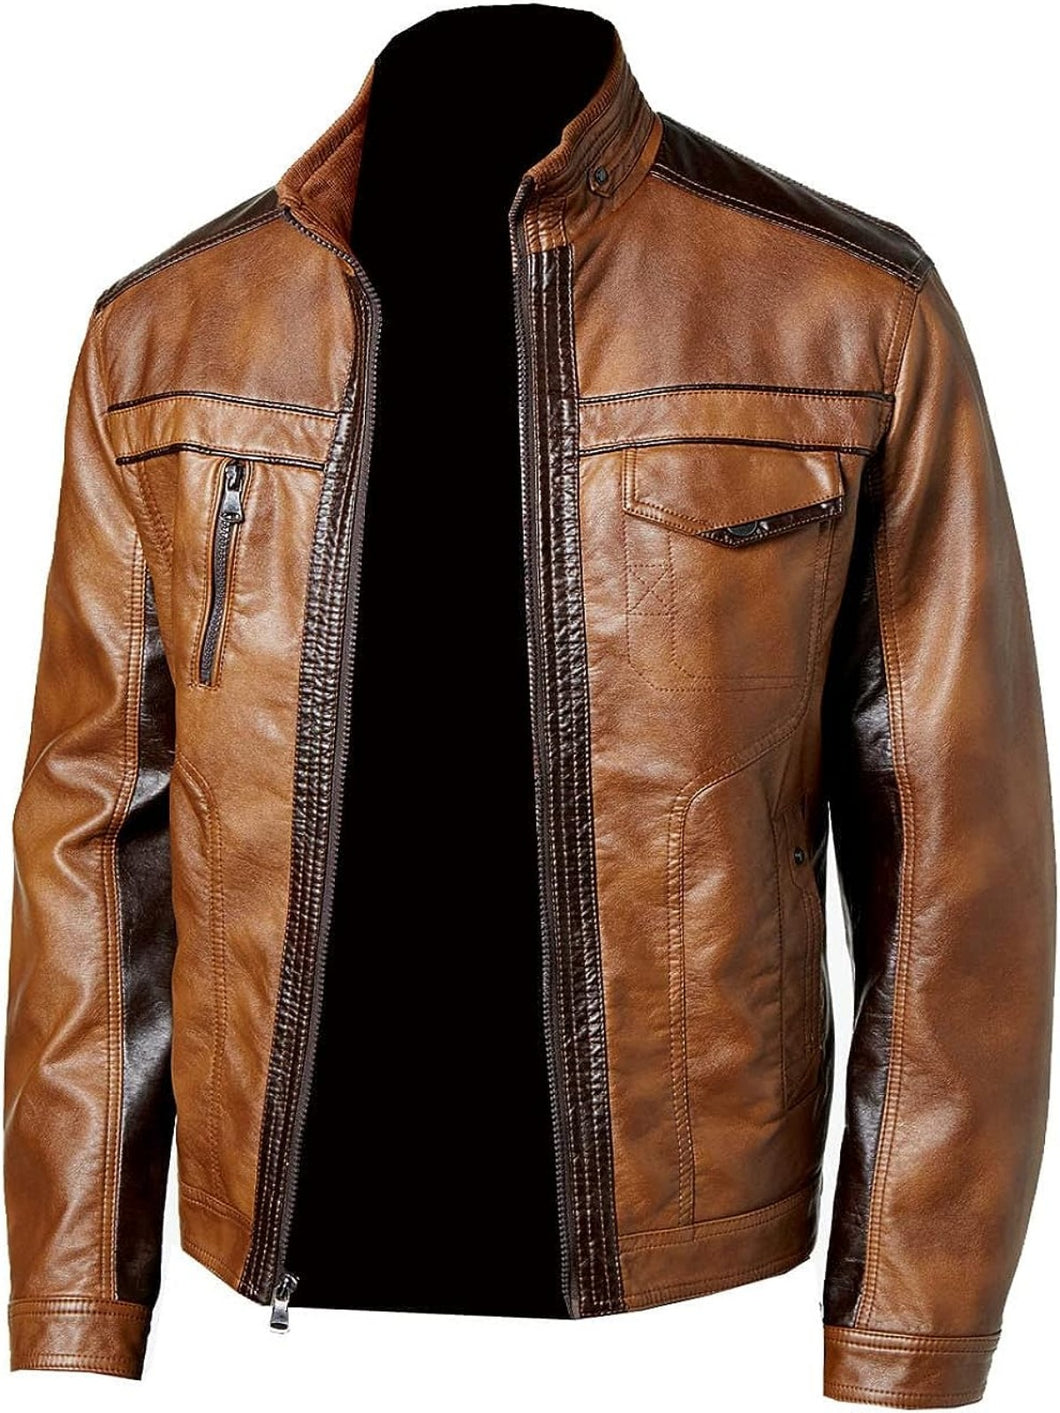 Men's Distressed Fashion Designer Leather Jacket